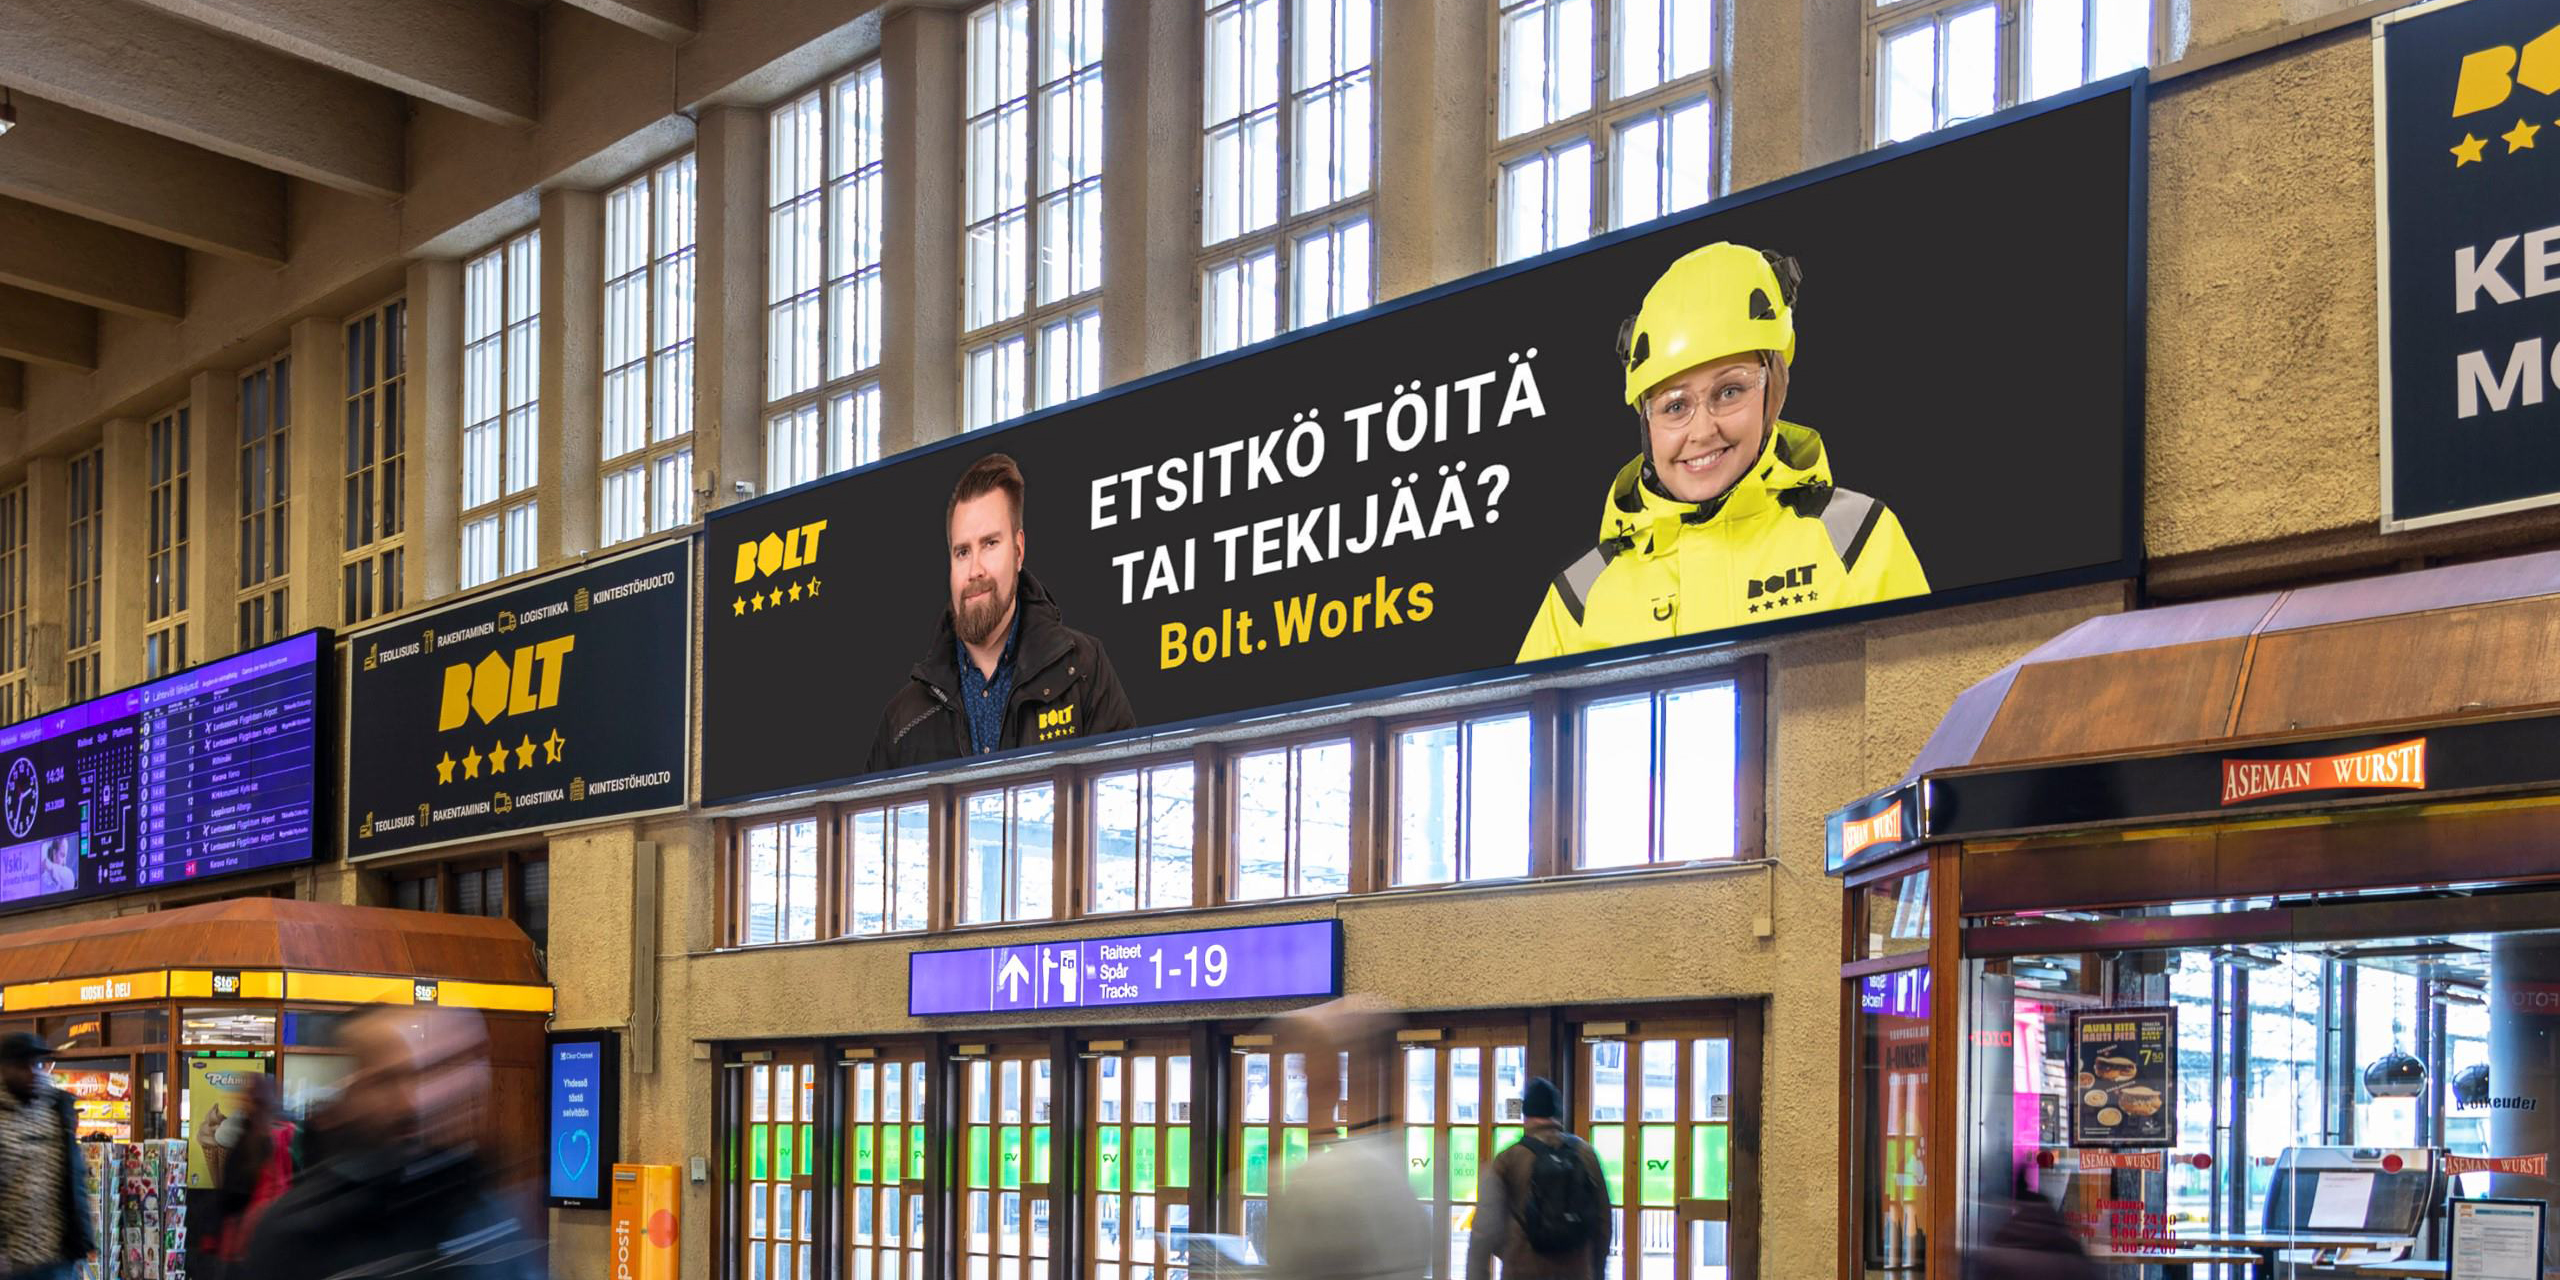 Bolt.works mainos Helsingin Päärautatieaseman mediapinnassa